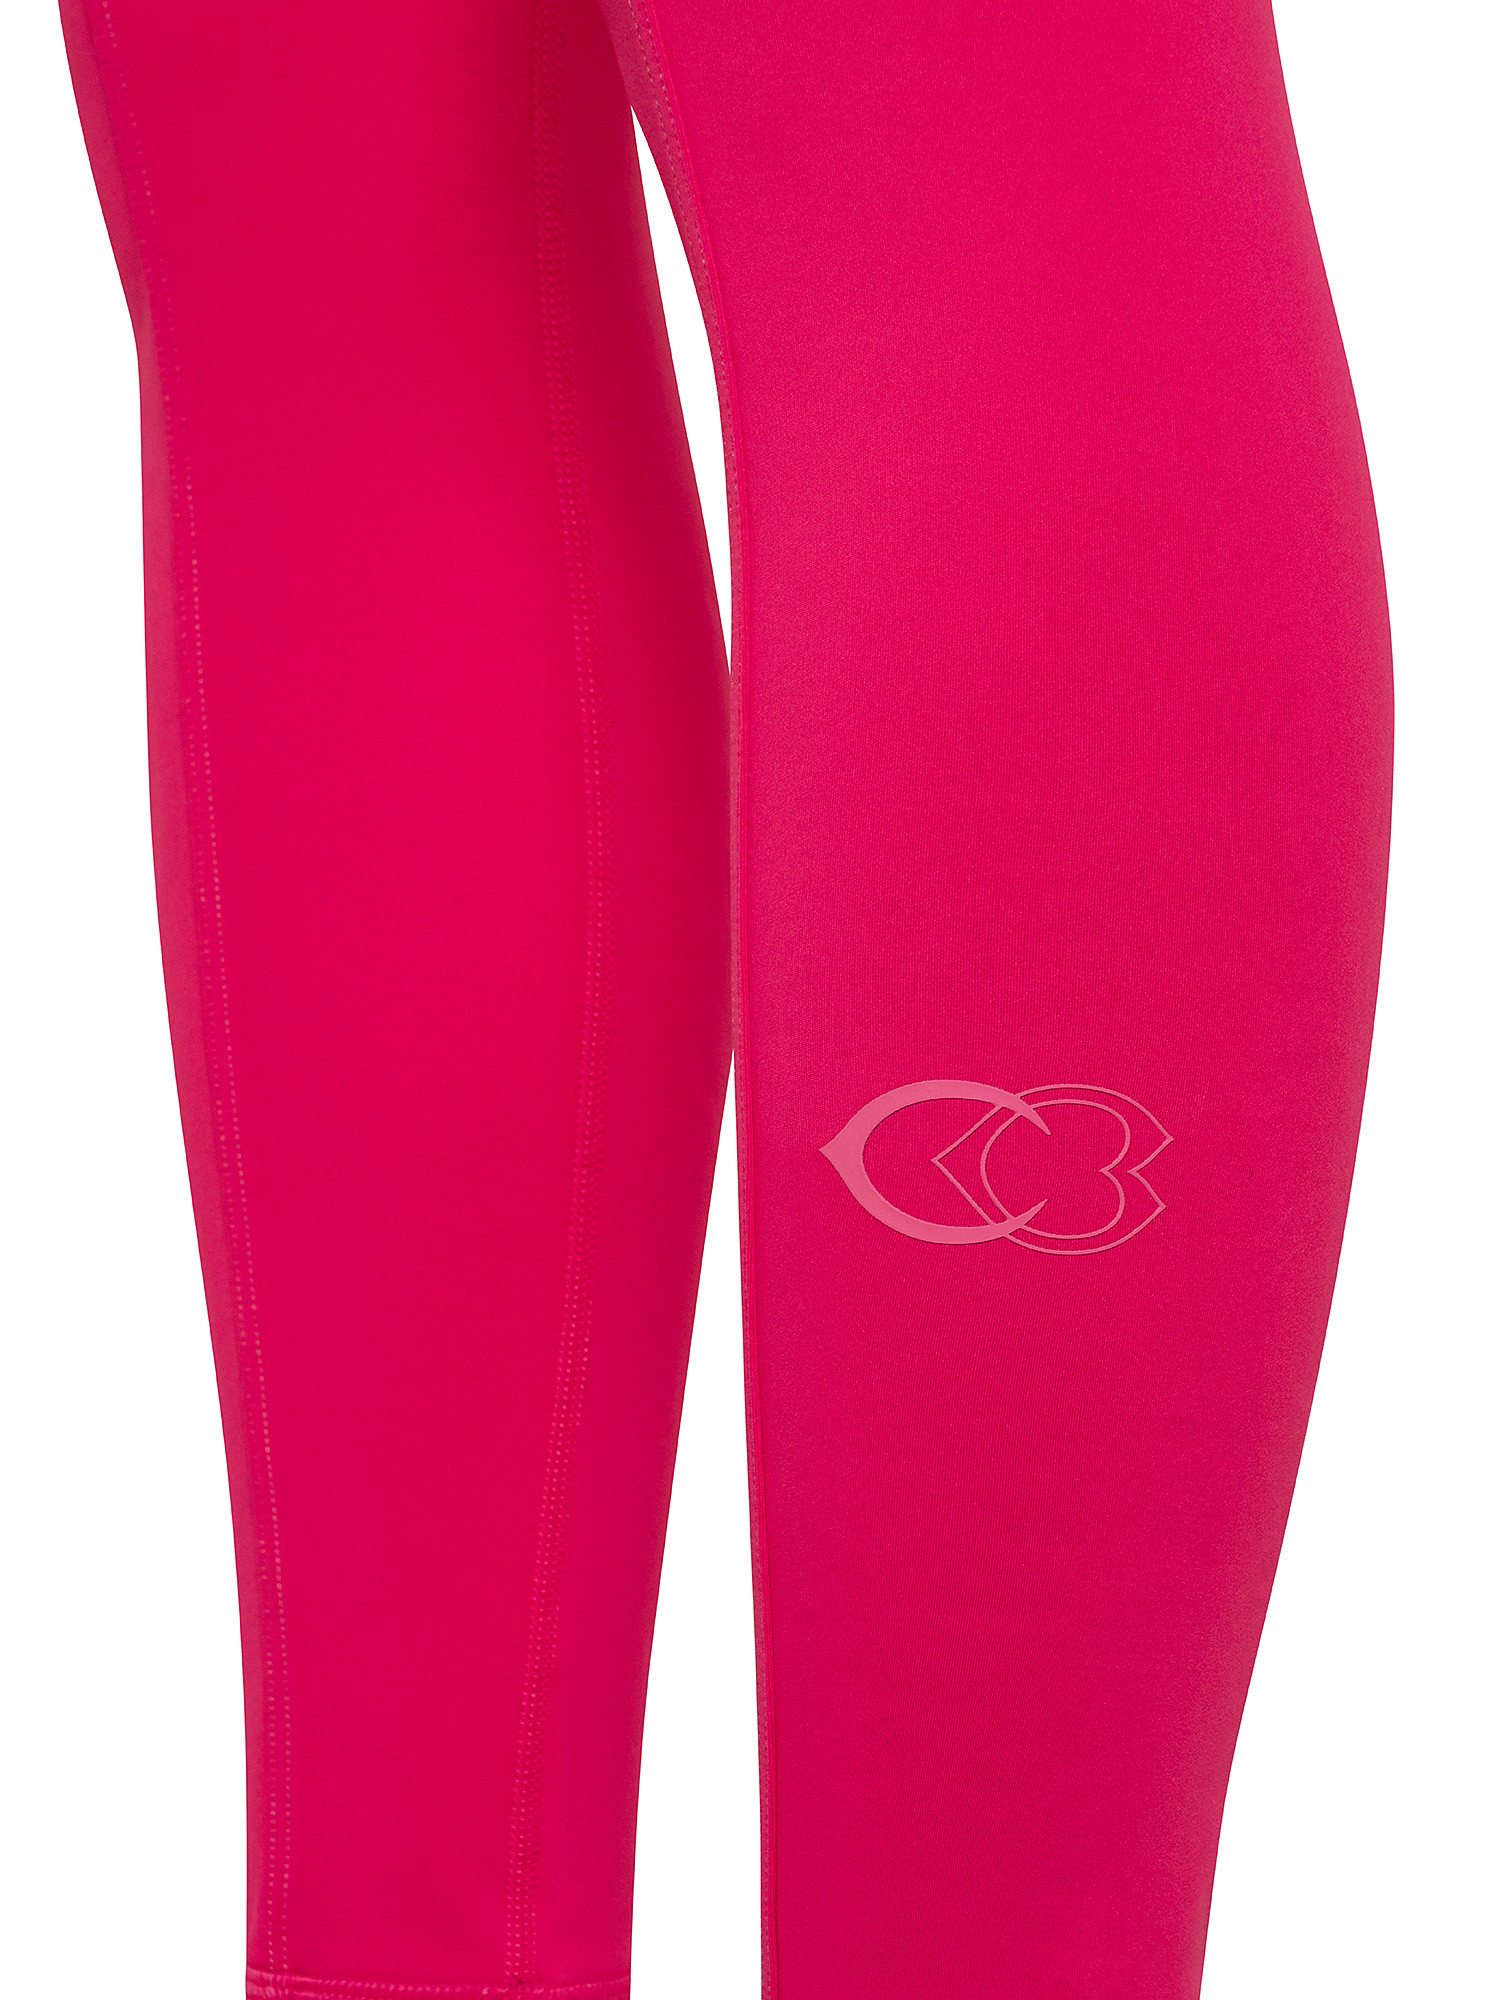 Leggings Cardi B High-Rise, Pink, large image number 2